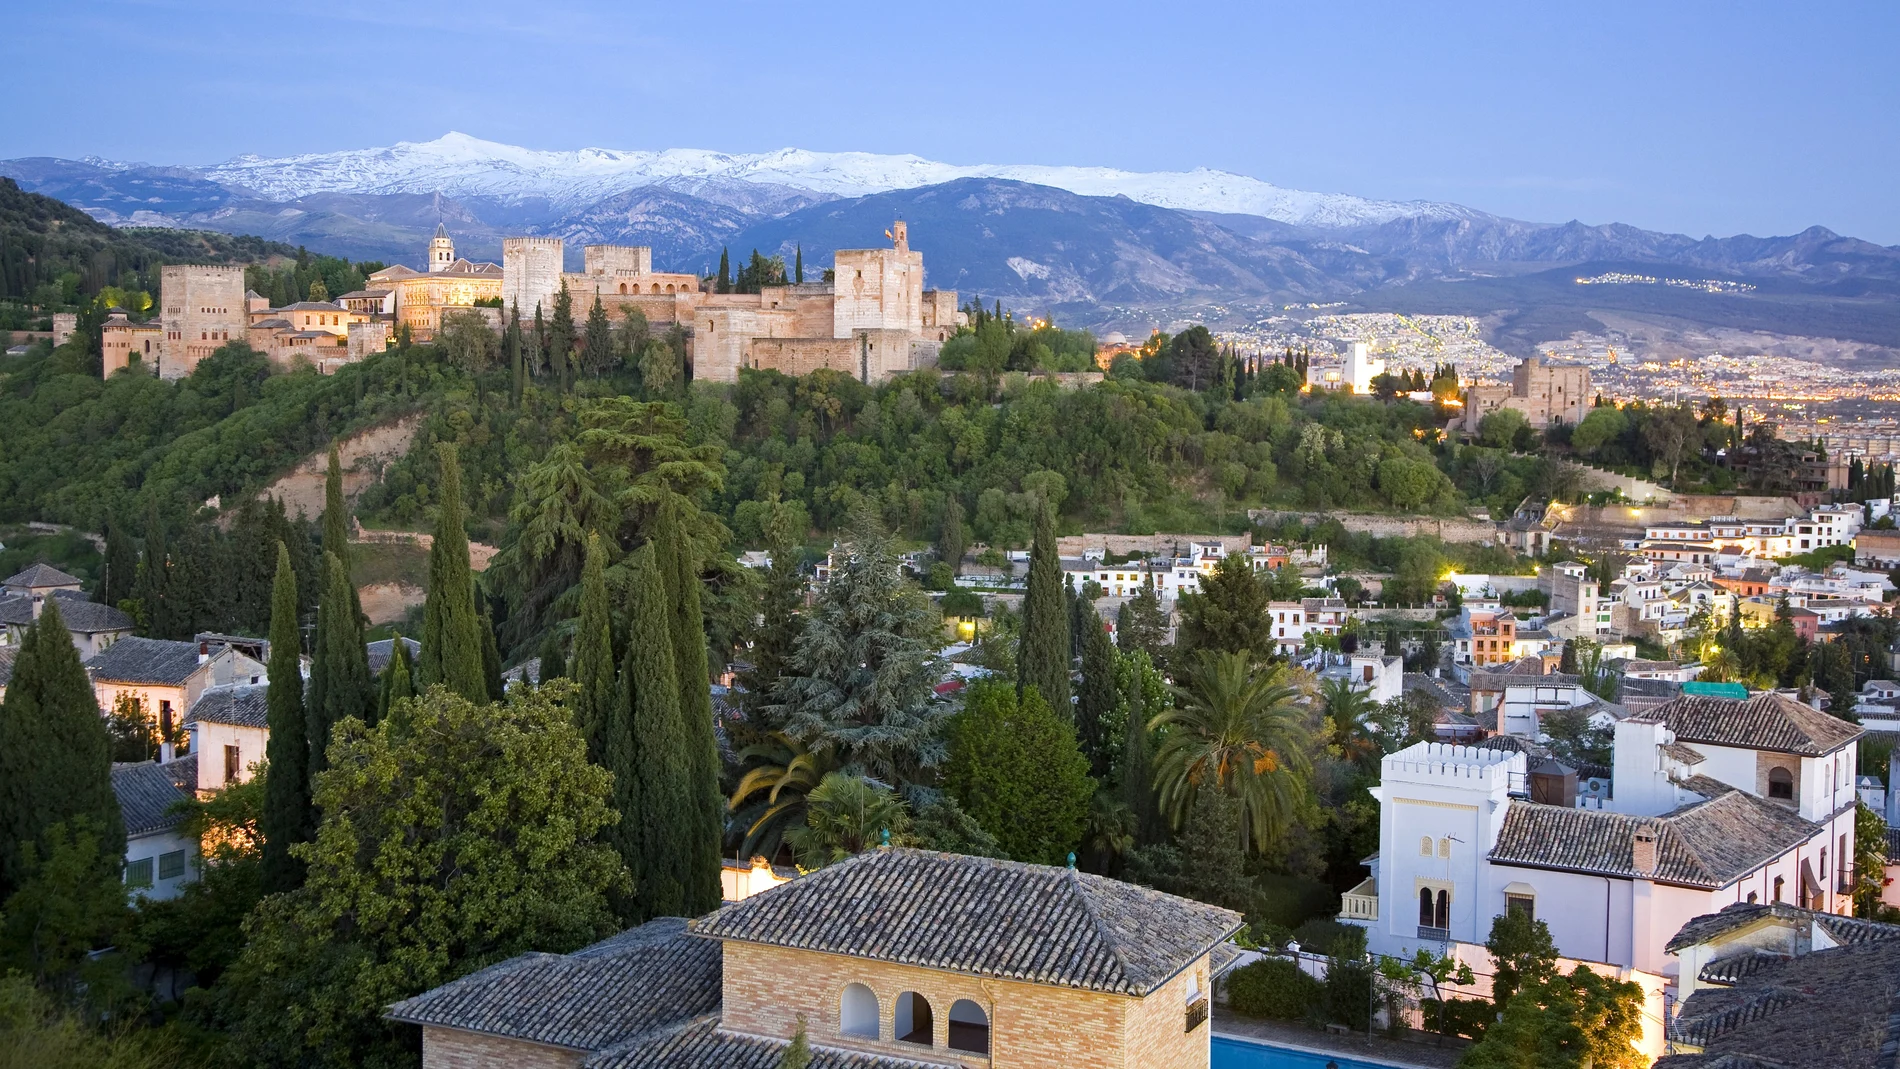 Vista de la Alhambra y Sierra Nevada desde el barrio del Albaicín